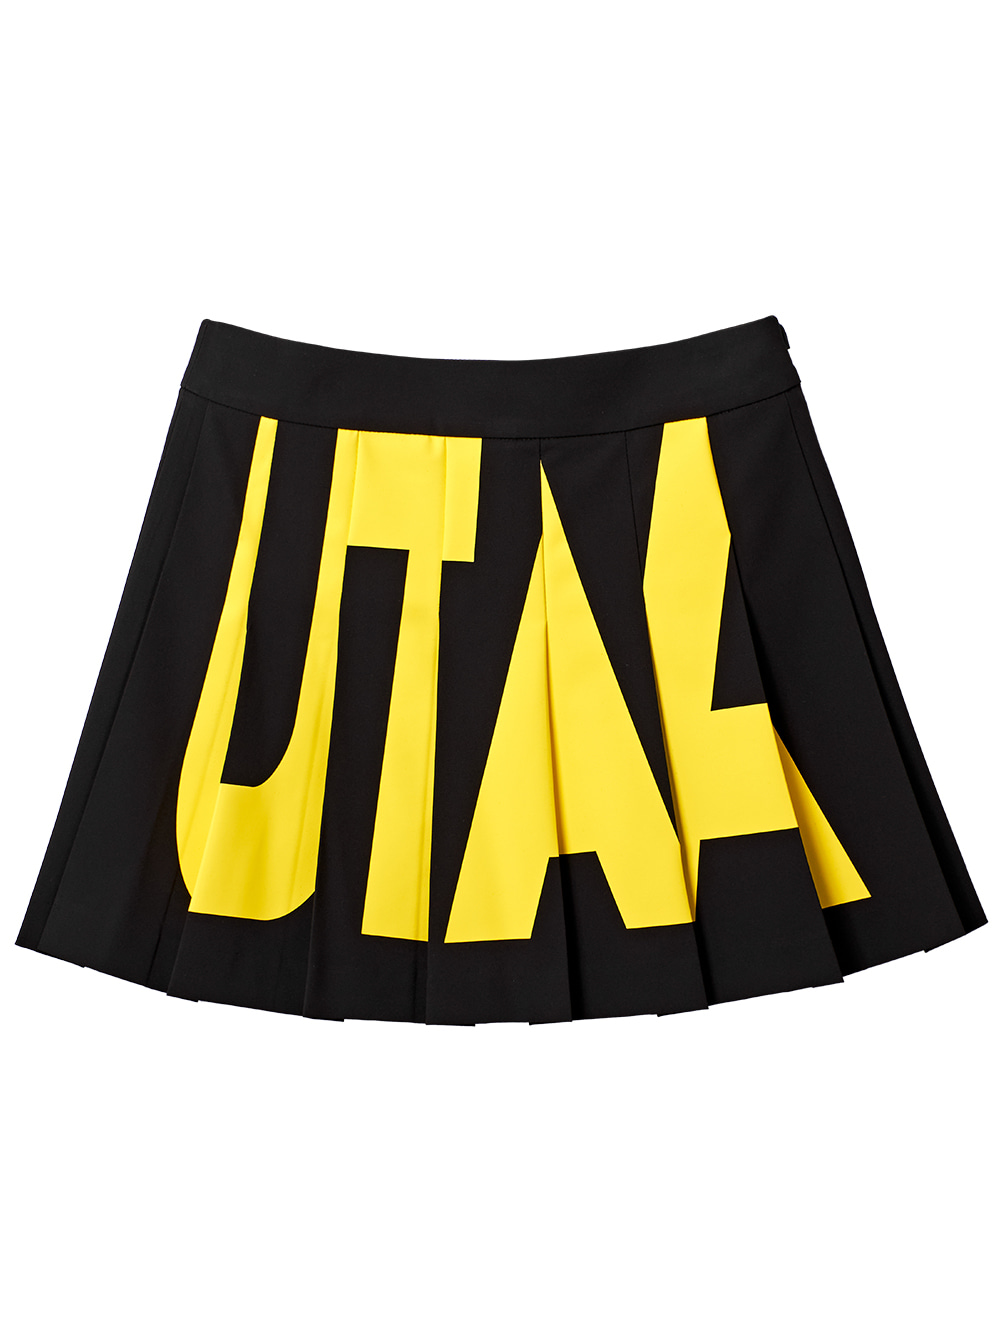 UTAA Bold Logo Flare Fan Skirt : Black (UB2SKF112BK)